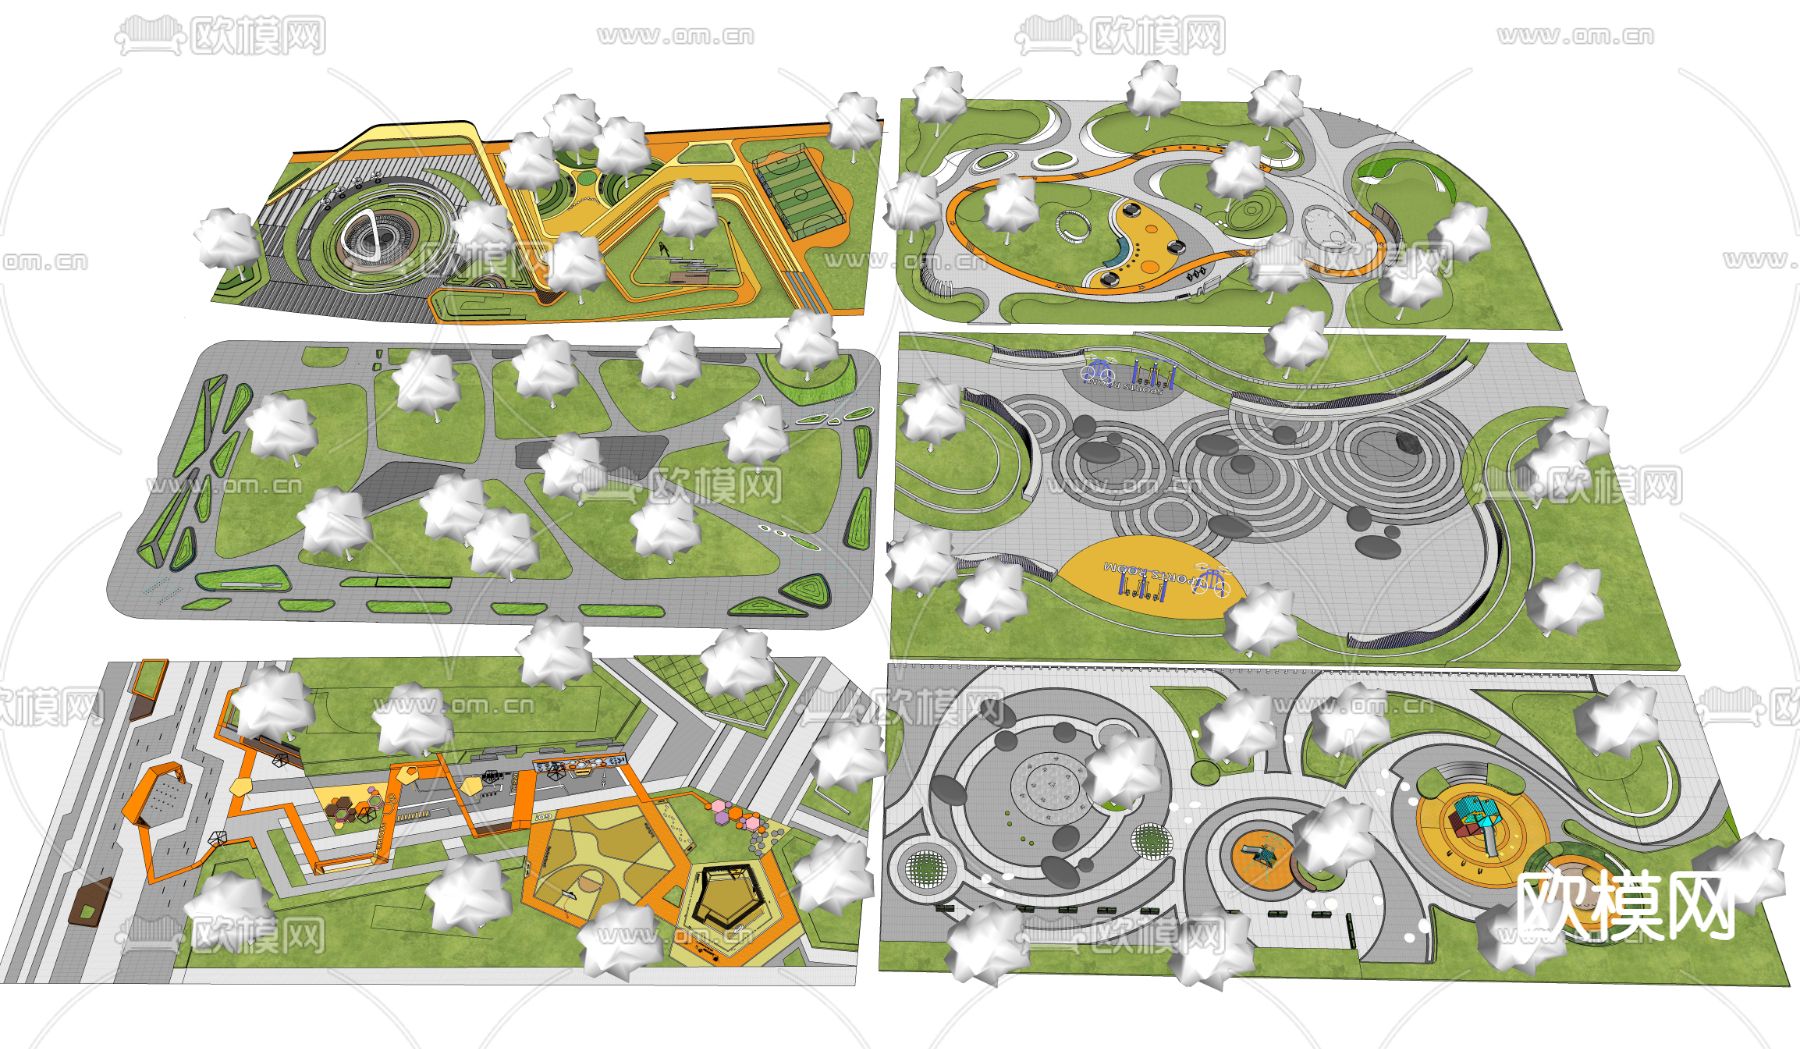 2023碧云体育公园游玩攻略,这是一个免费开放式街边公园...【去哪儿攻略】